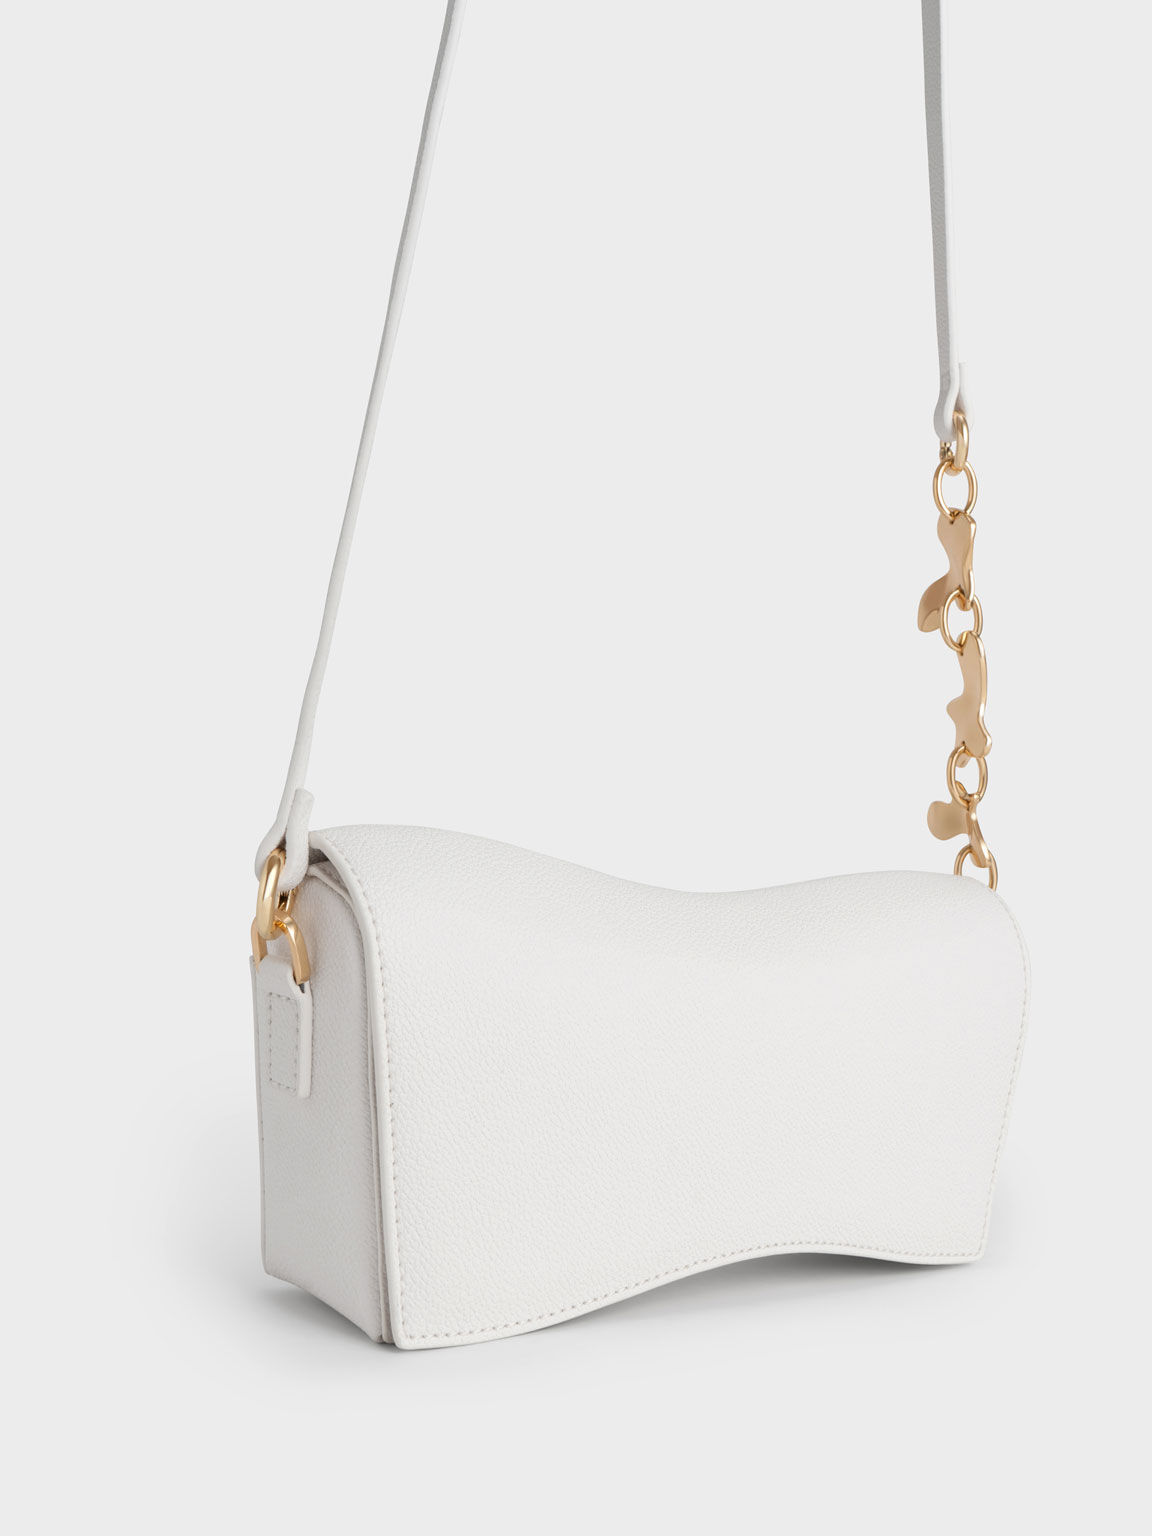 Verity Embellished Handle Sculptural Bag, White, hi-res